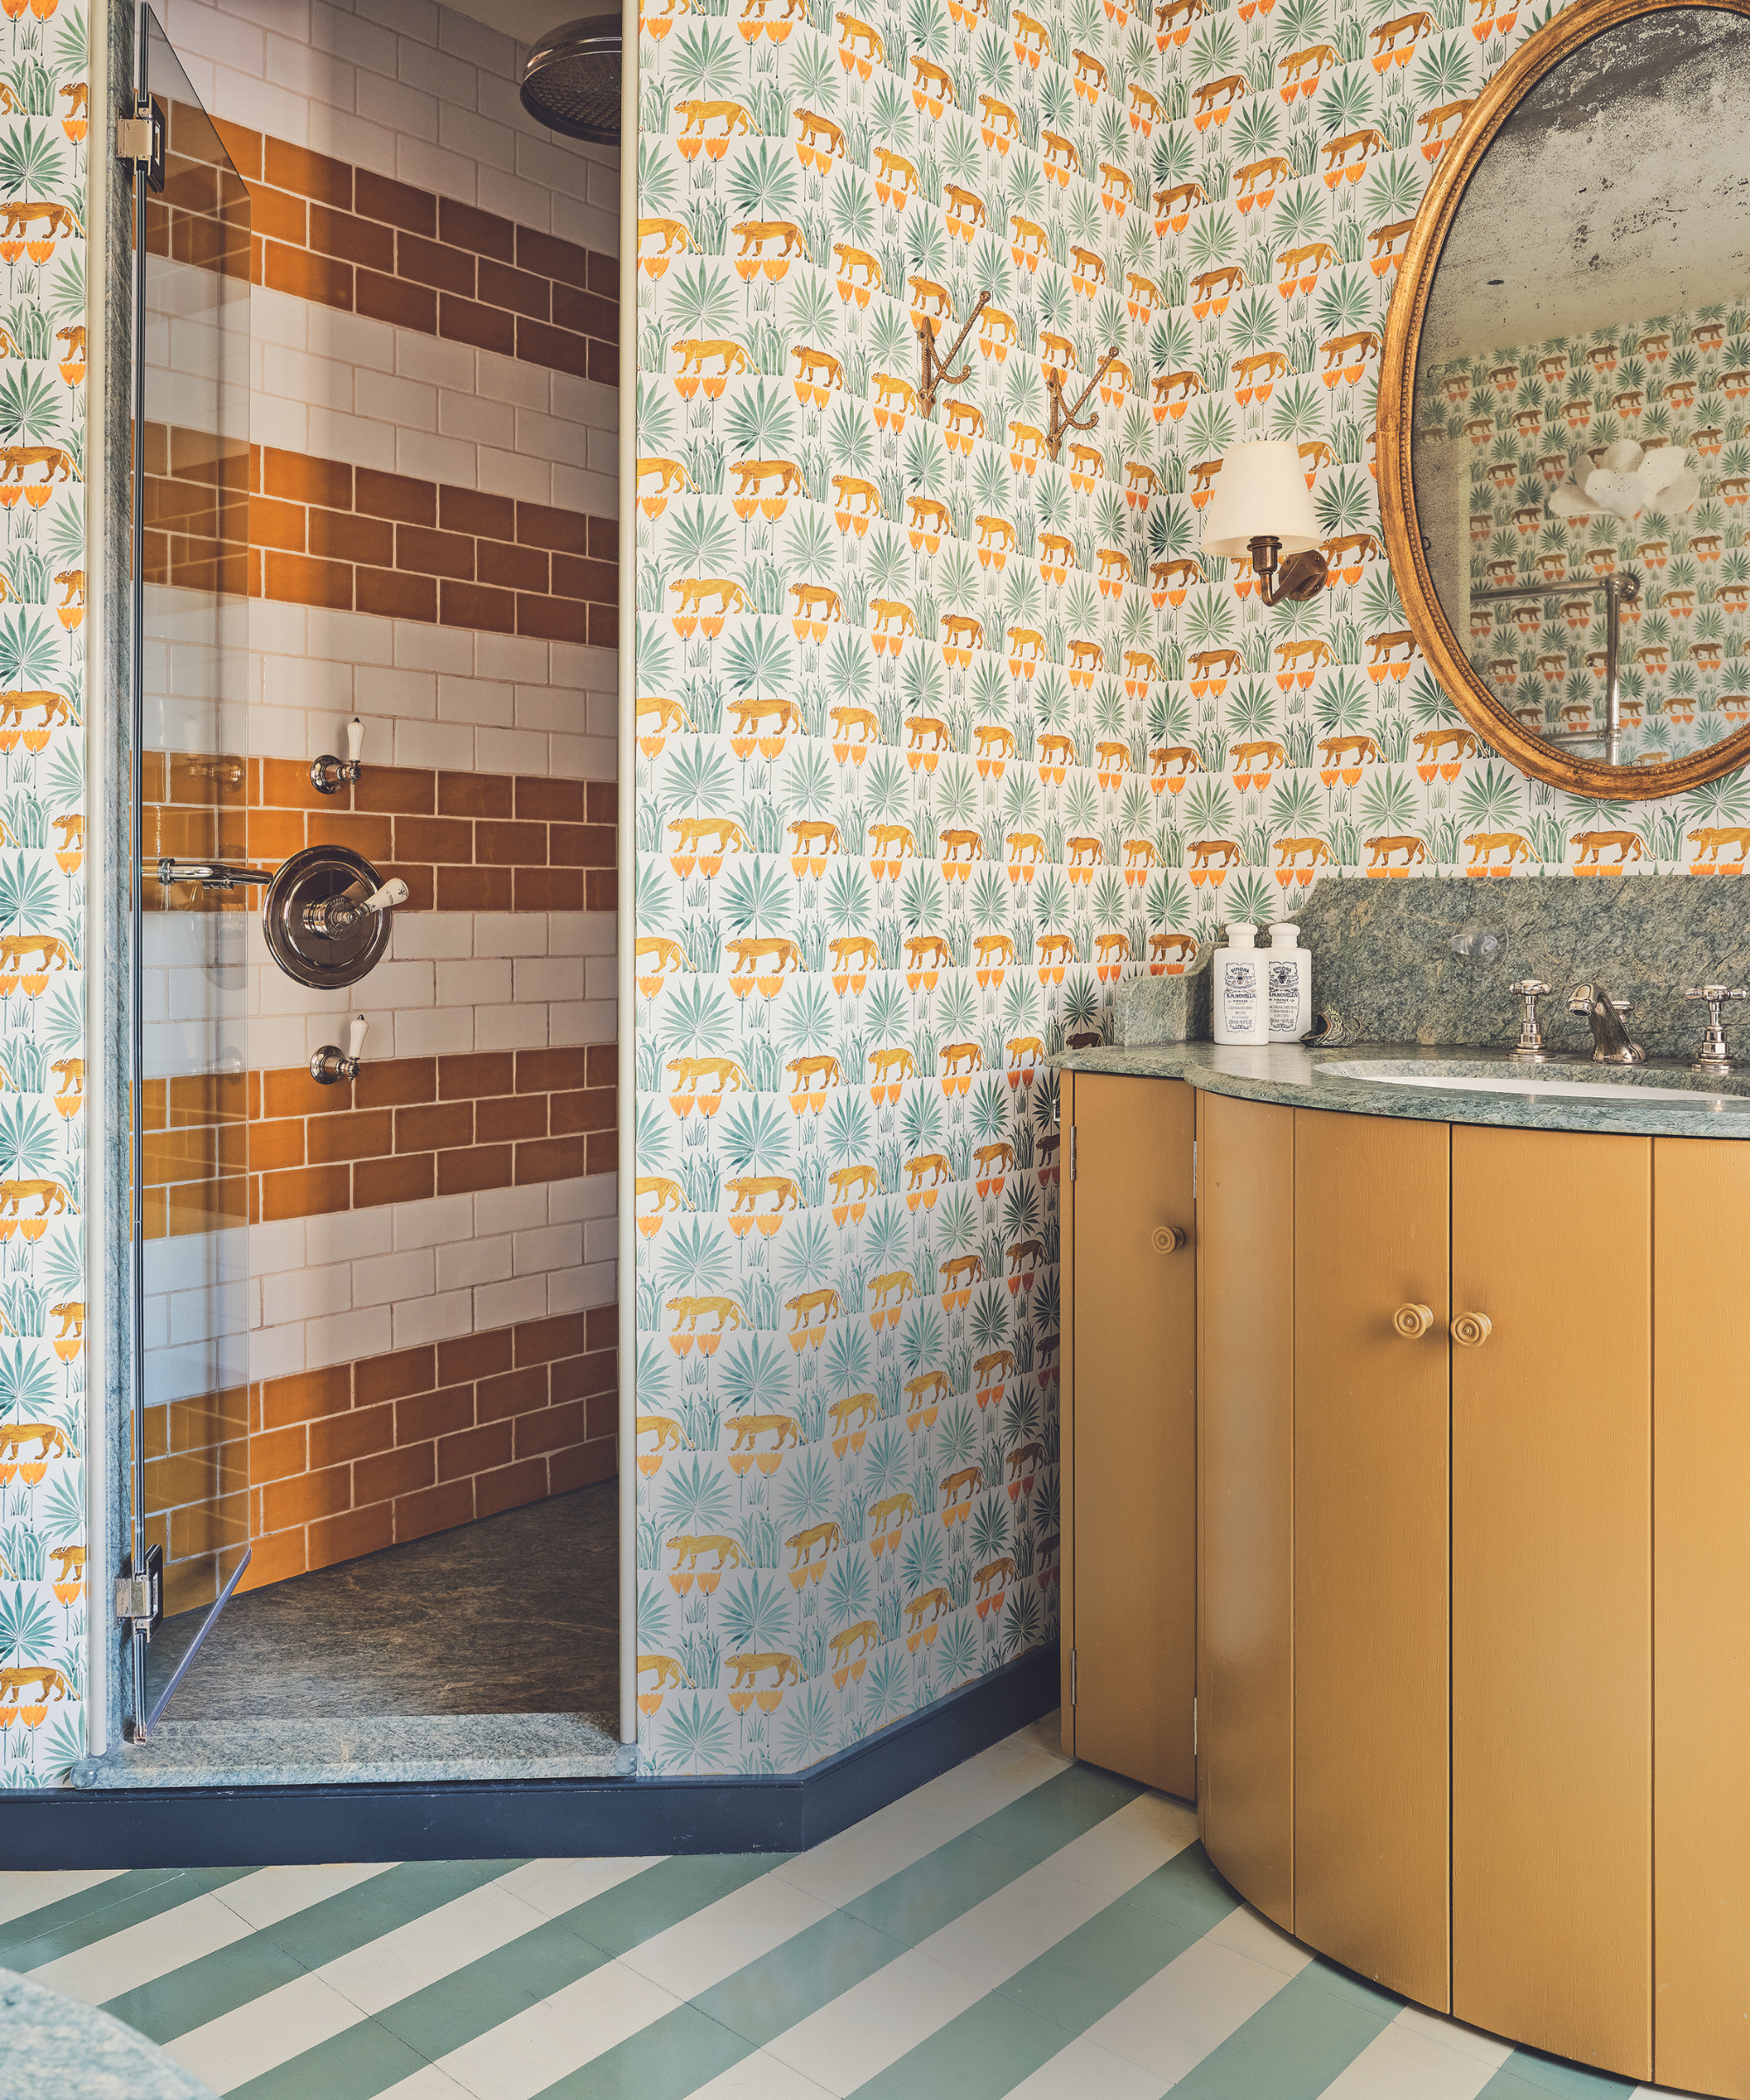 salle de bains avec beaucoup de motifs, y compris un sol à rayures et un papier peint à motifs de tigre dans une zone de douche carrelée à rayures dans des tons oranges, verts et bleus